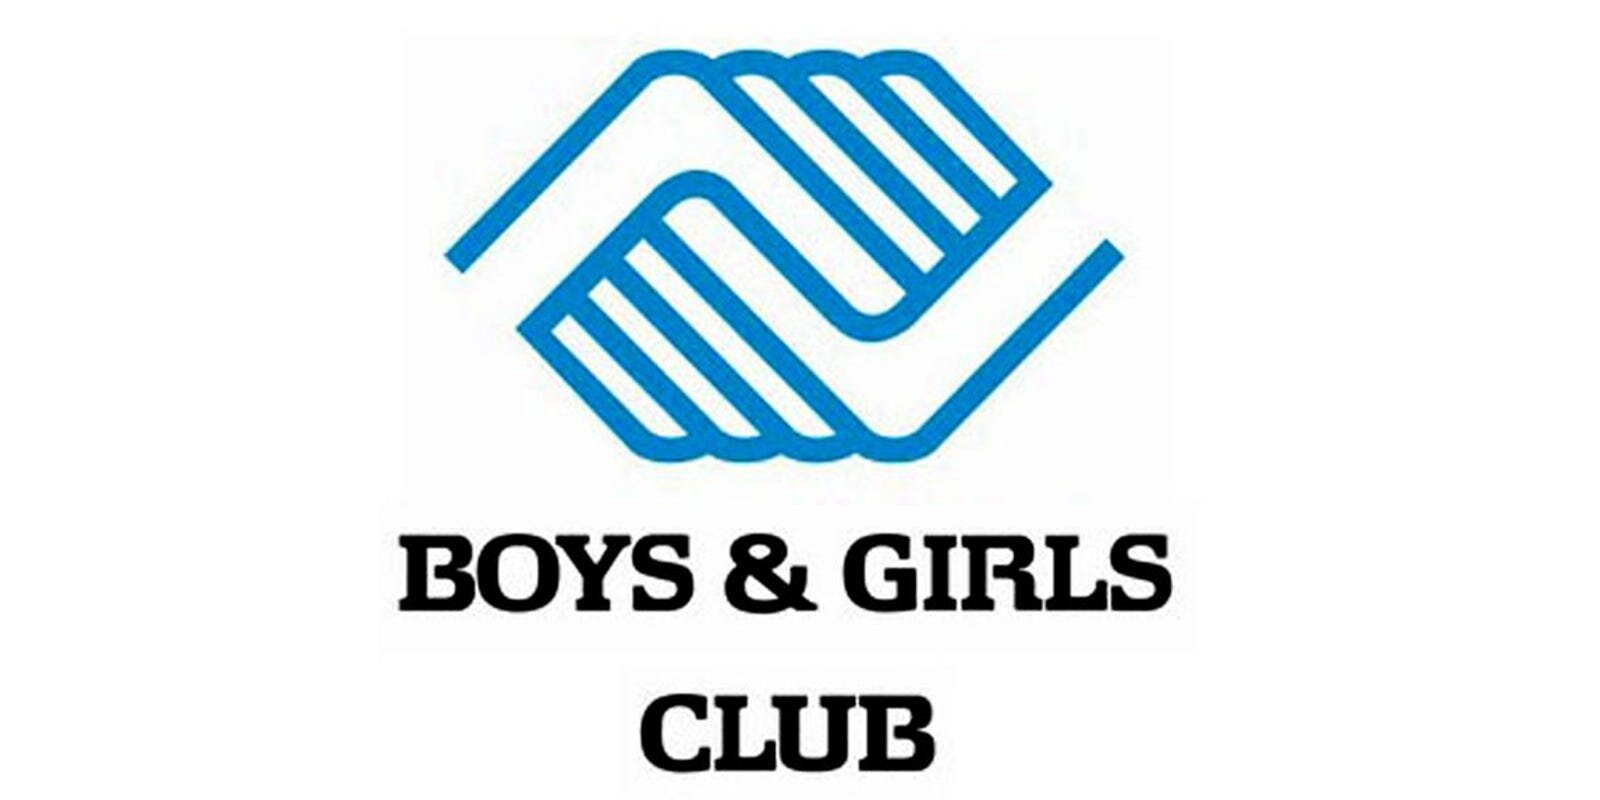 635971912553371617-Boys-and-Girls-Club-logo.jpg